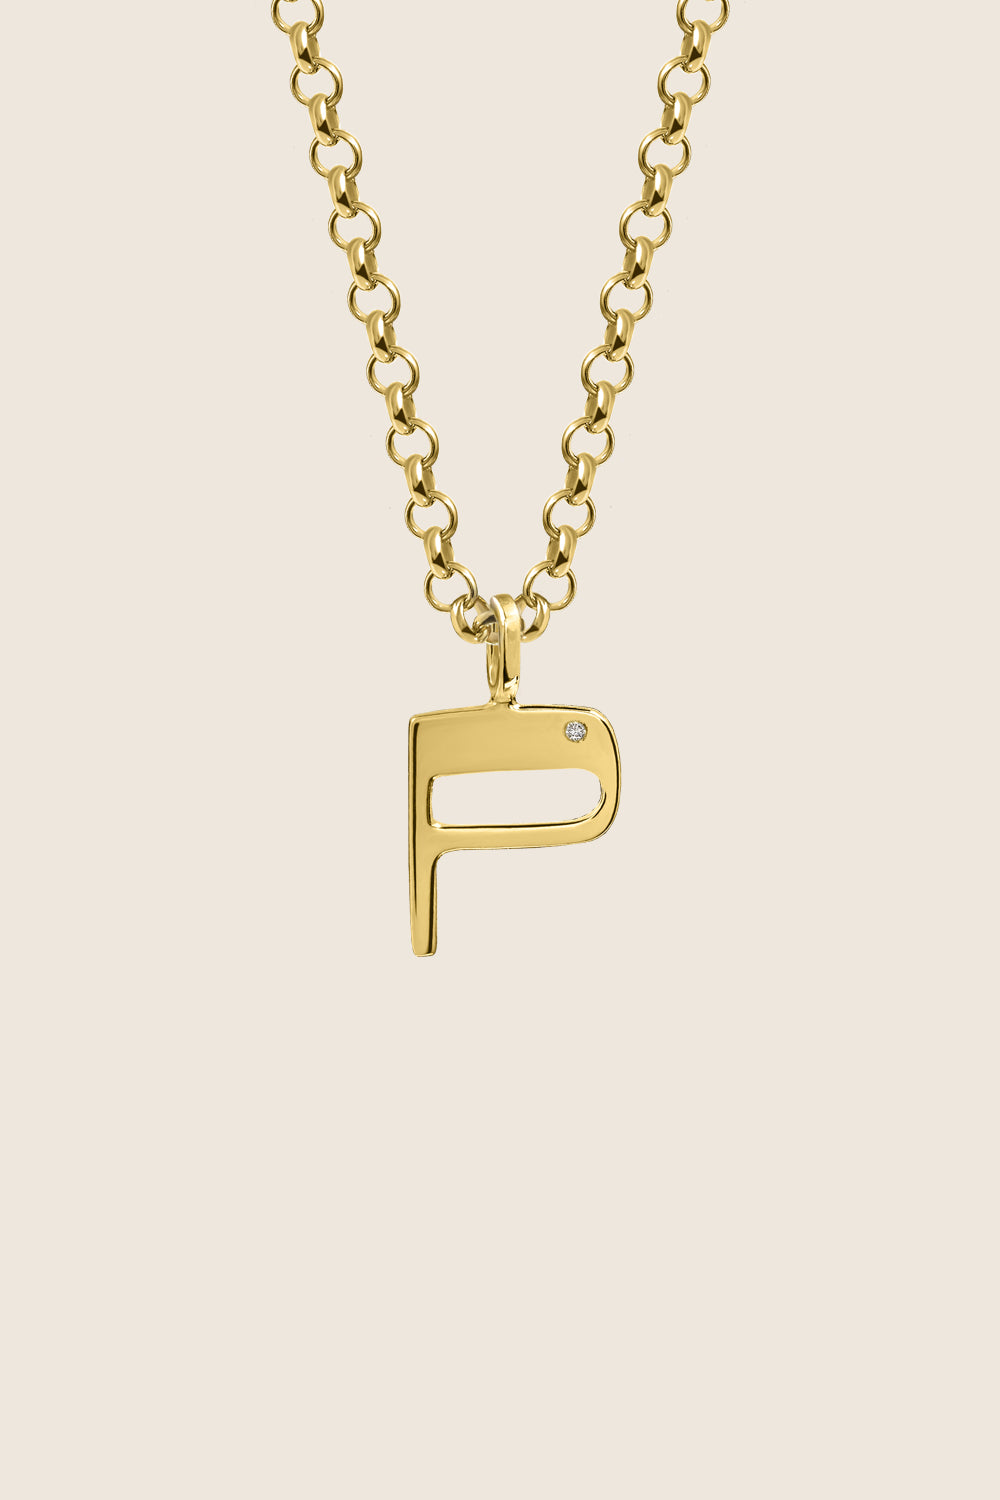 P necklace